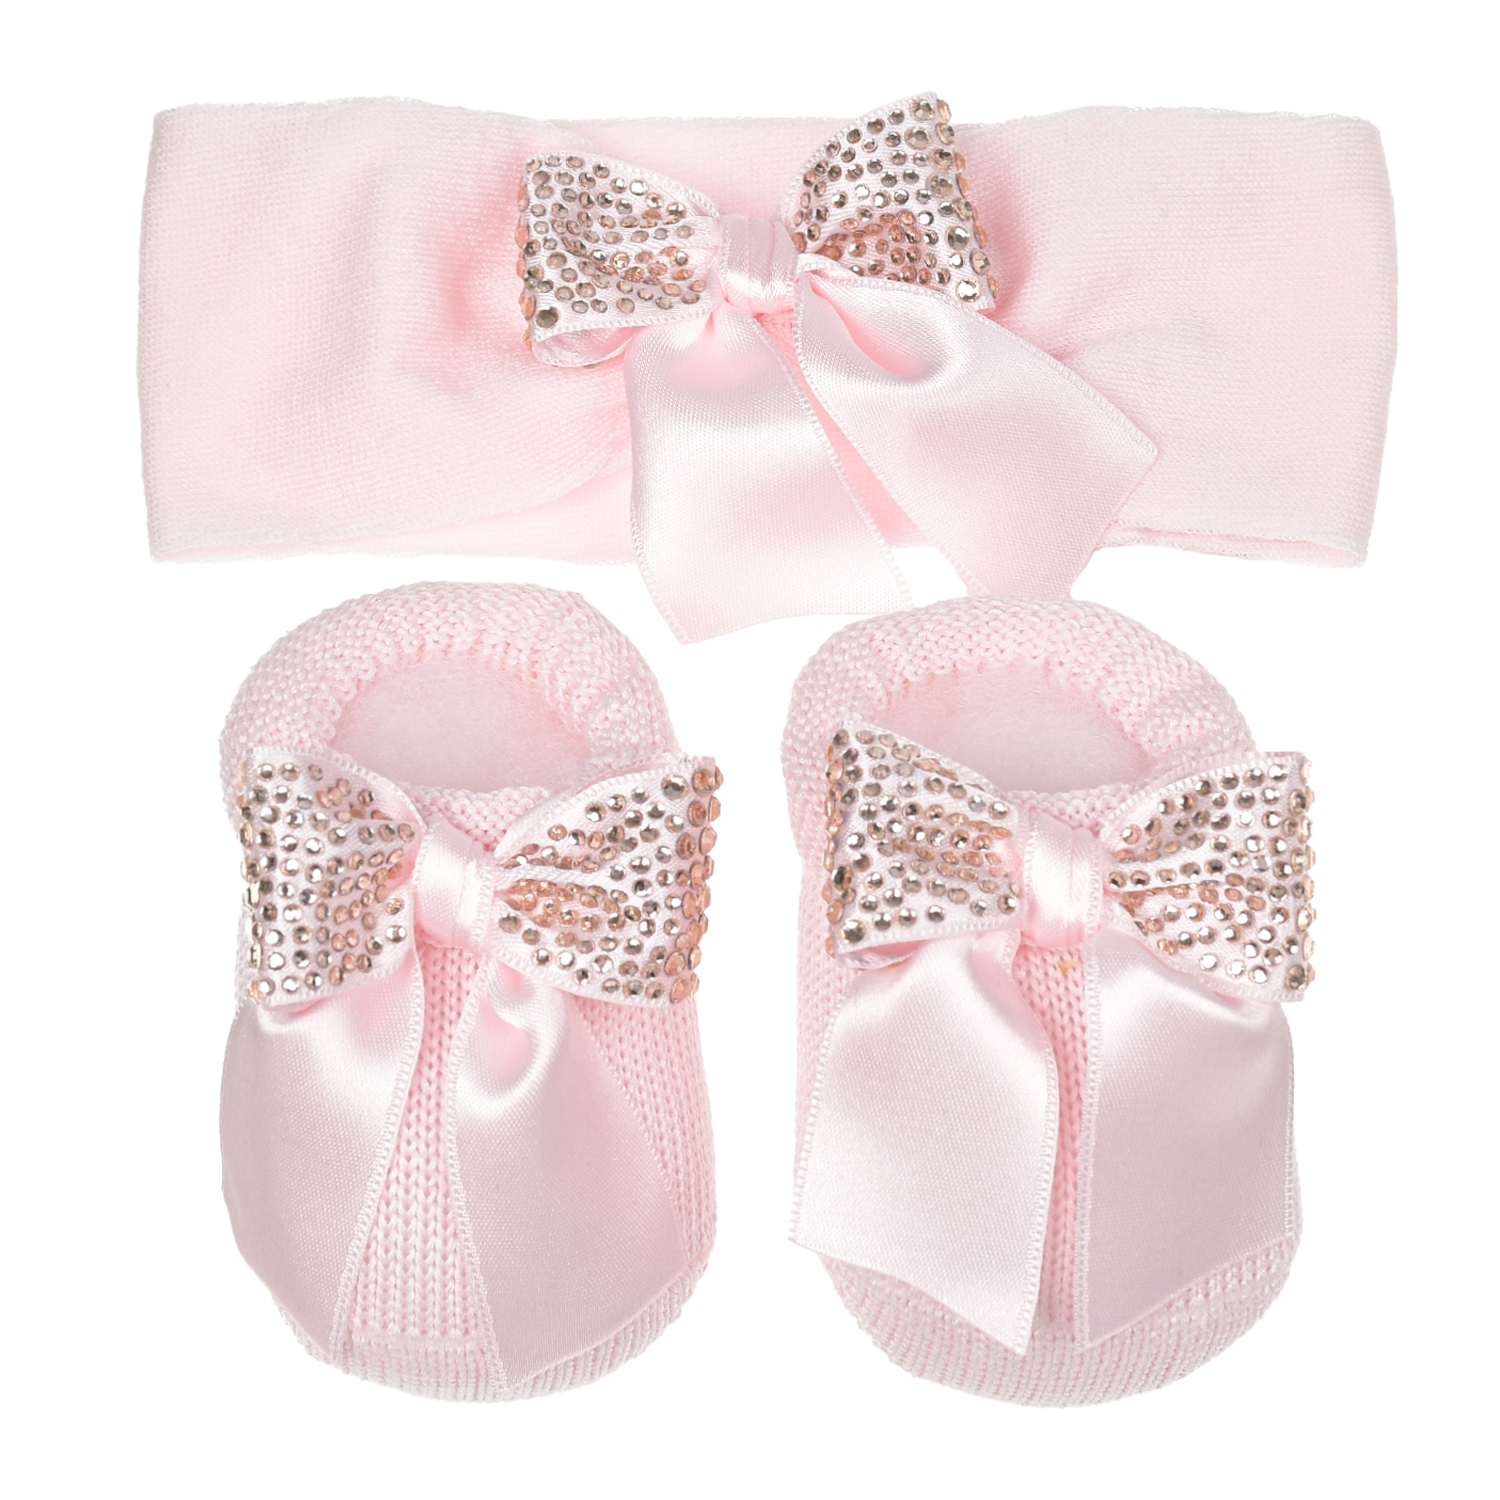 Подарочный набор: повязка и пинетки, розовый Story Loris подарочный набор повязка и пинетки аппликация принцесса розовый la perla детский